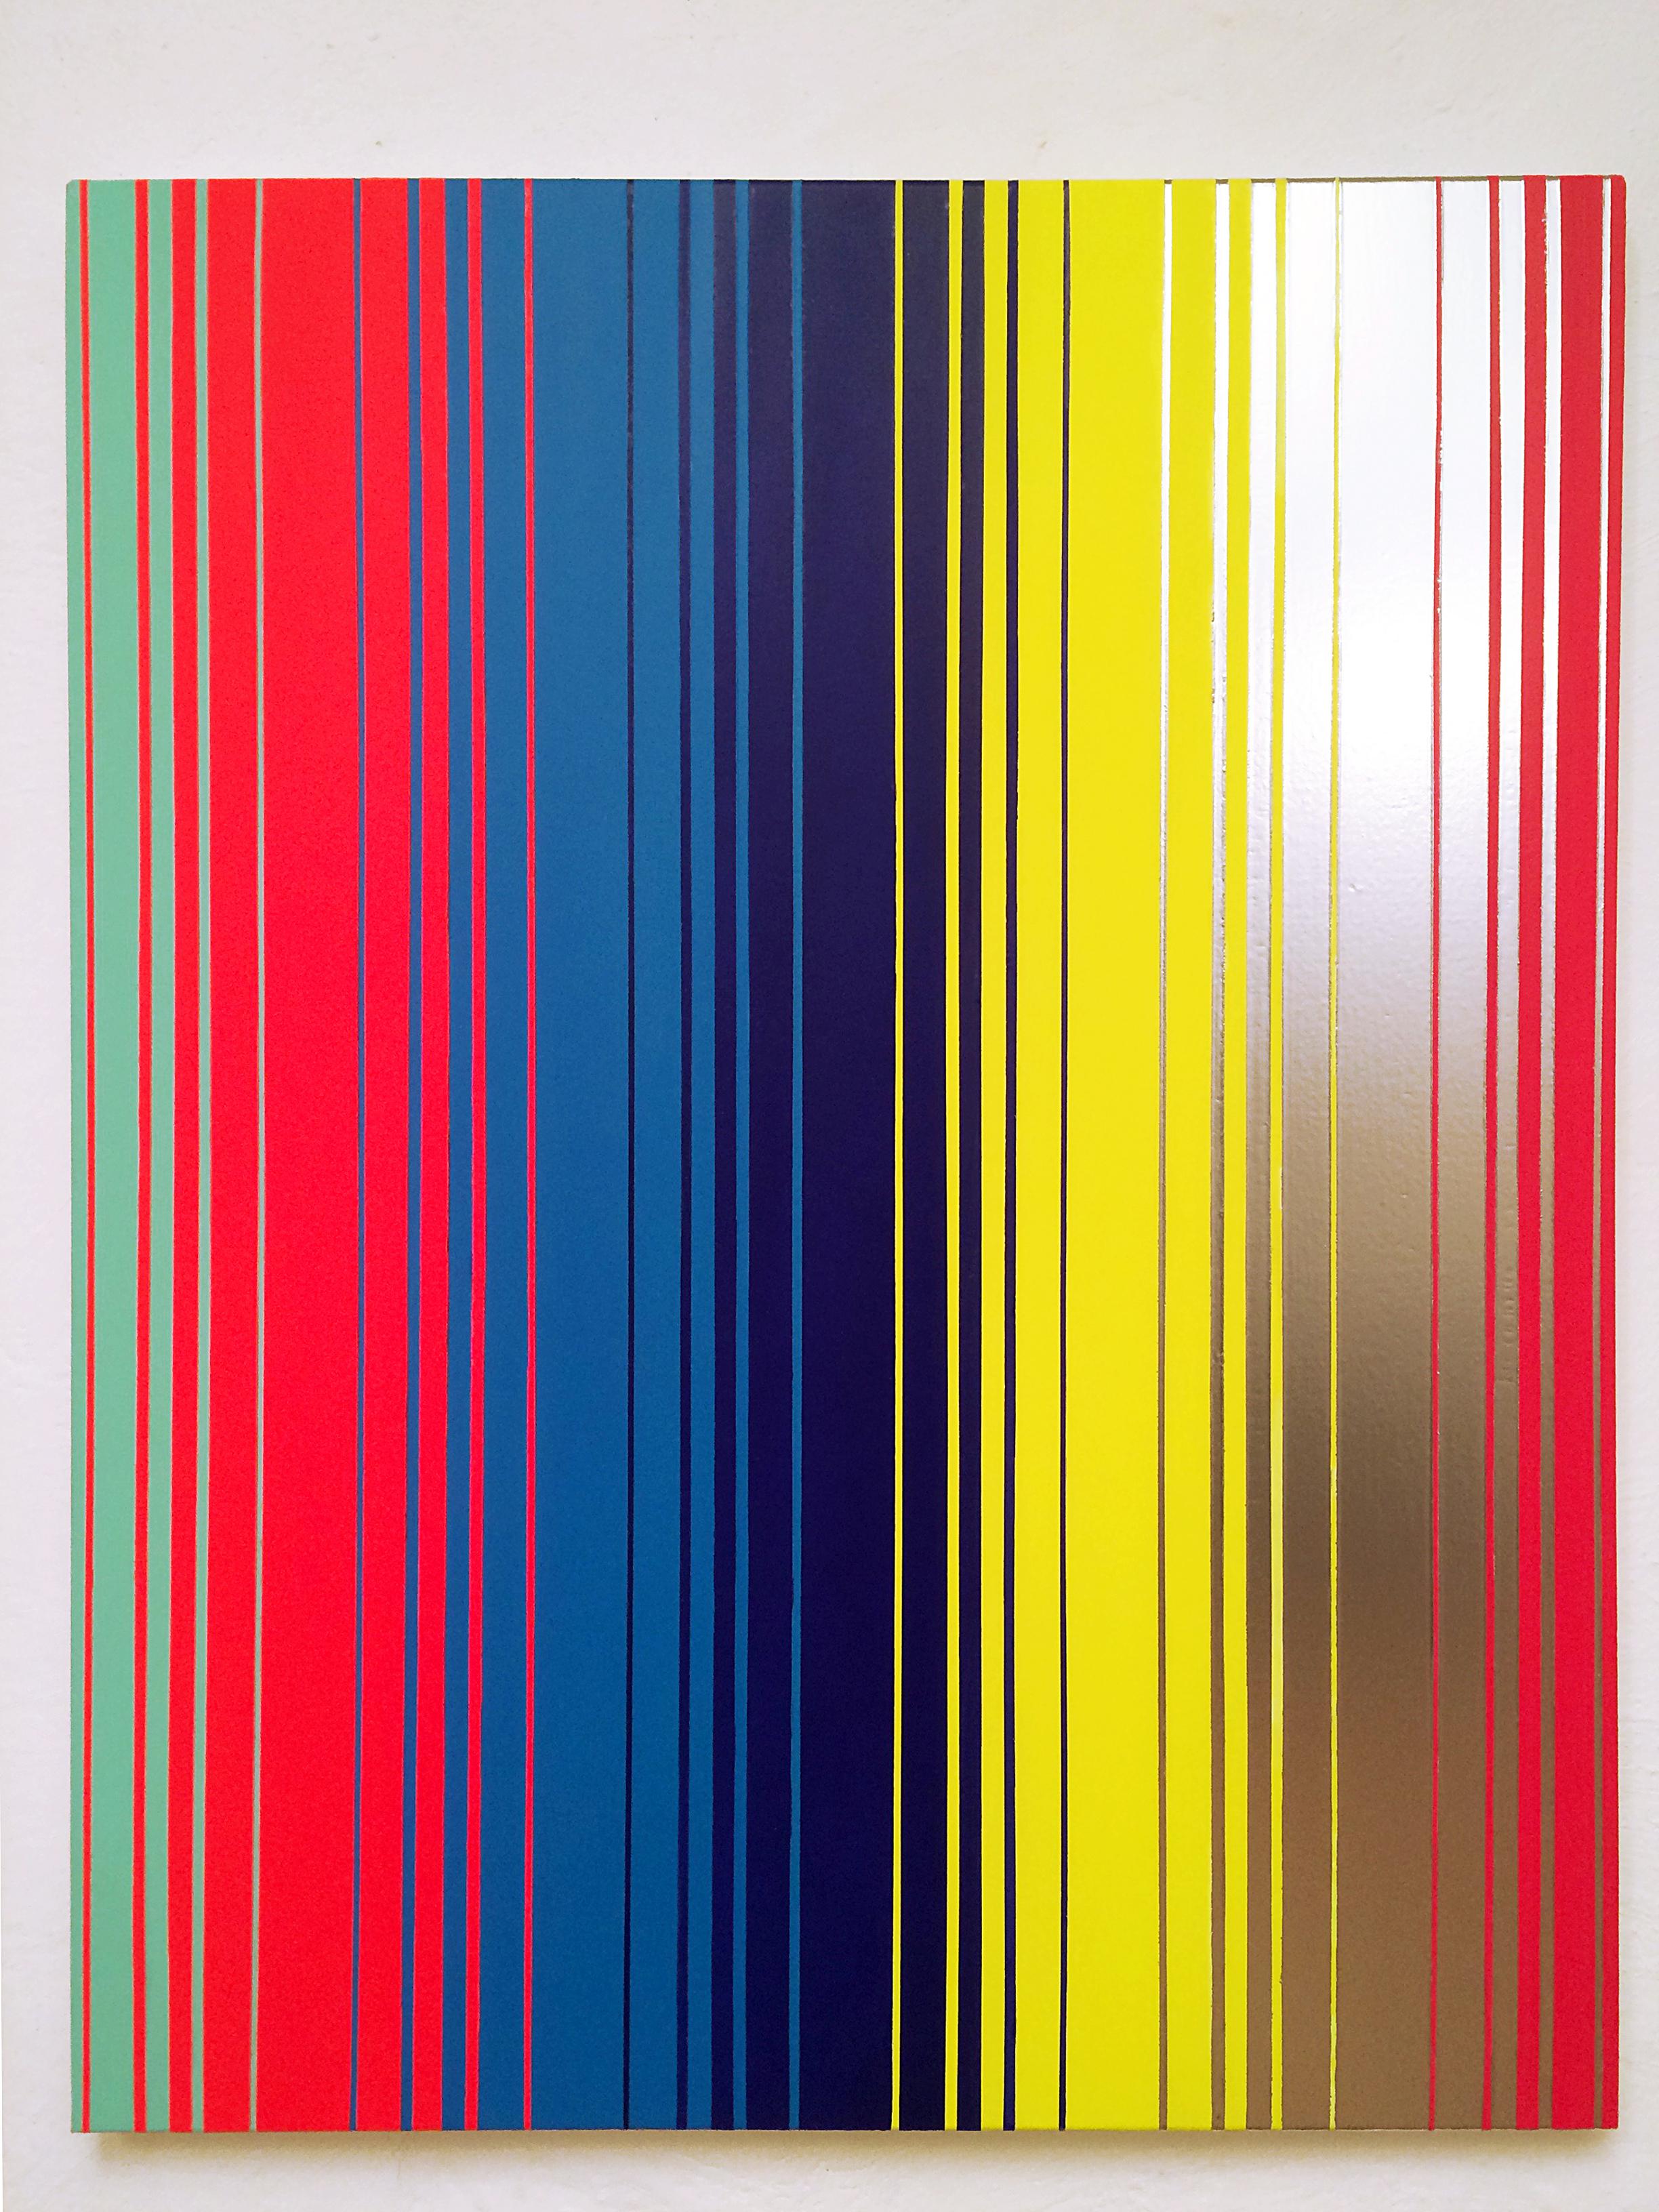 "Secuencia No. 17", 2015, acrylic and enamel on canvas, 100 x 80 cm.